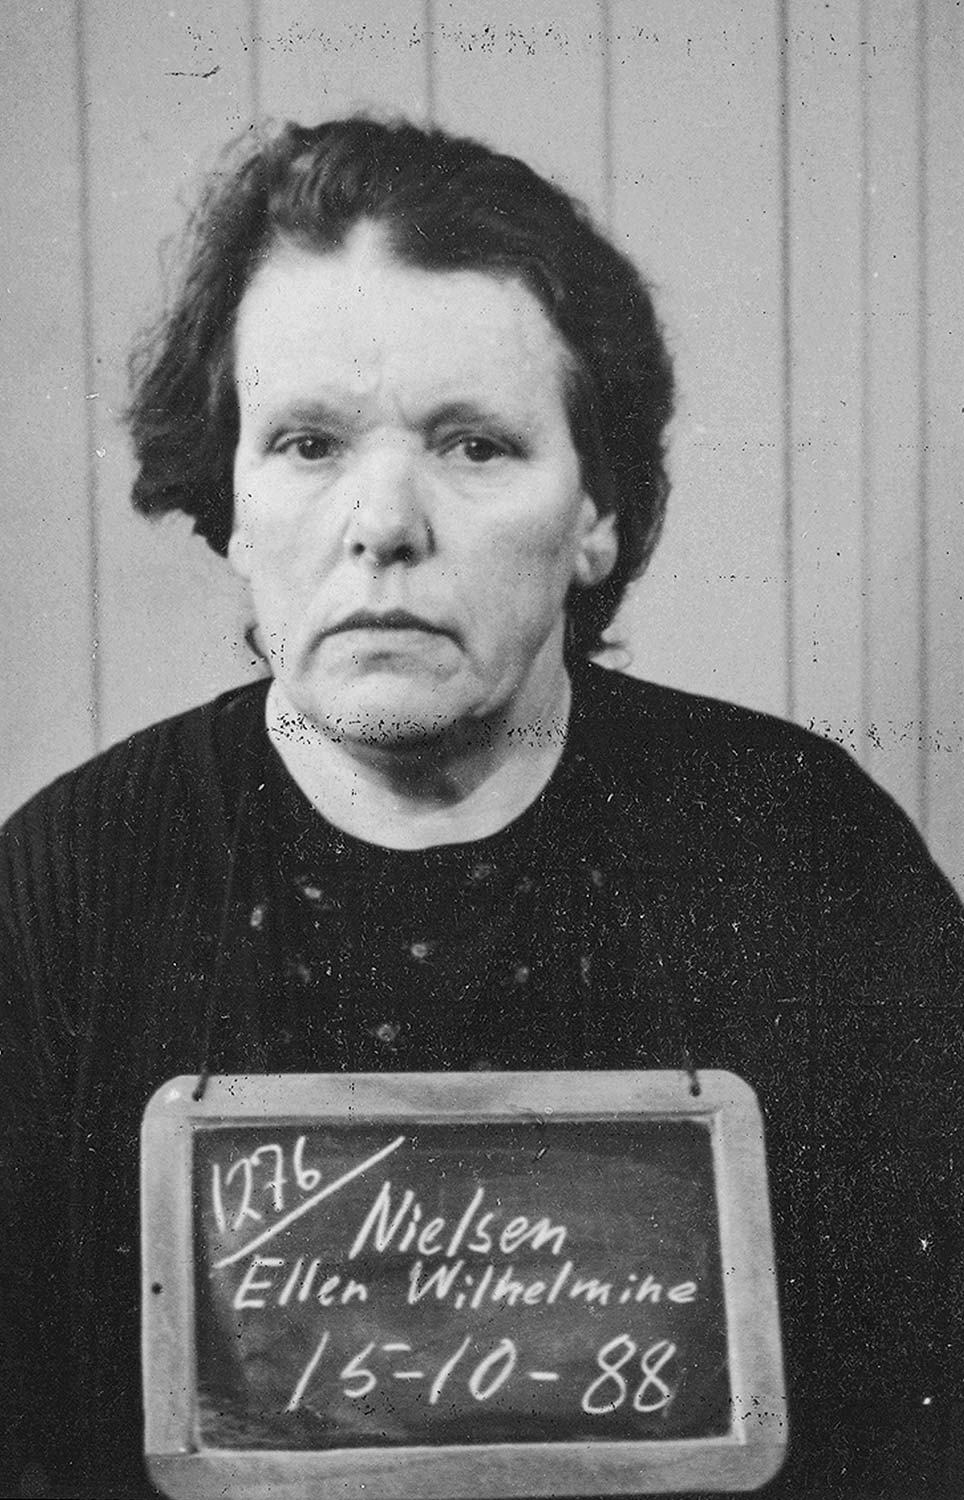 Ellen Wilhelmine Nielsen efter anholdesen i 1944. Foto: Historisk Arkiv Dragør.